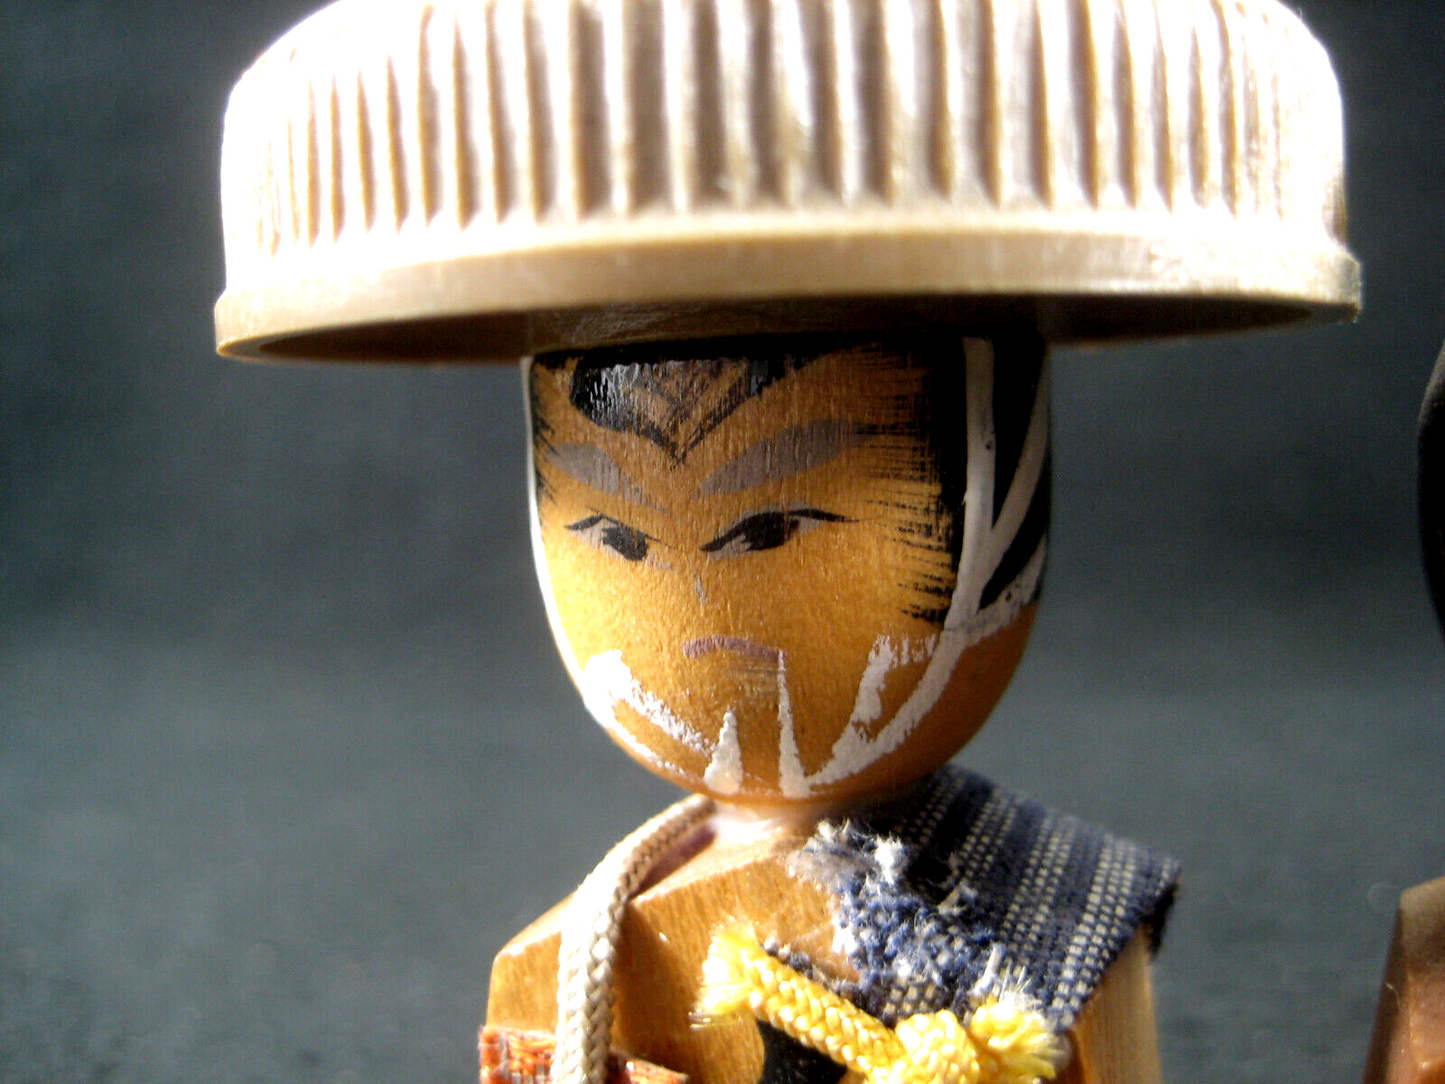 Vintage Japanese Kokeshi Pair Wooden Shogi Pieces Samurai King & Queen 4"